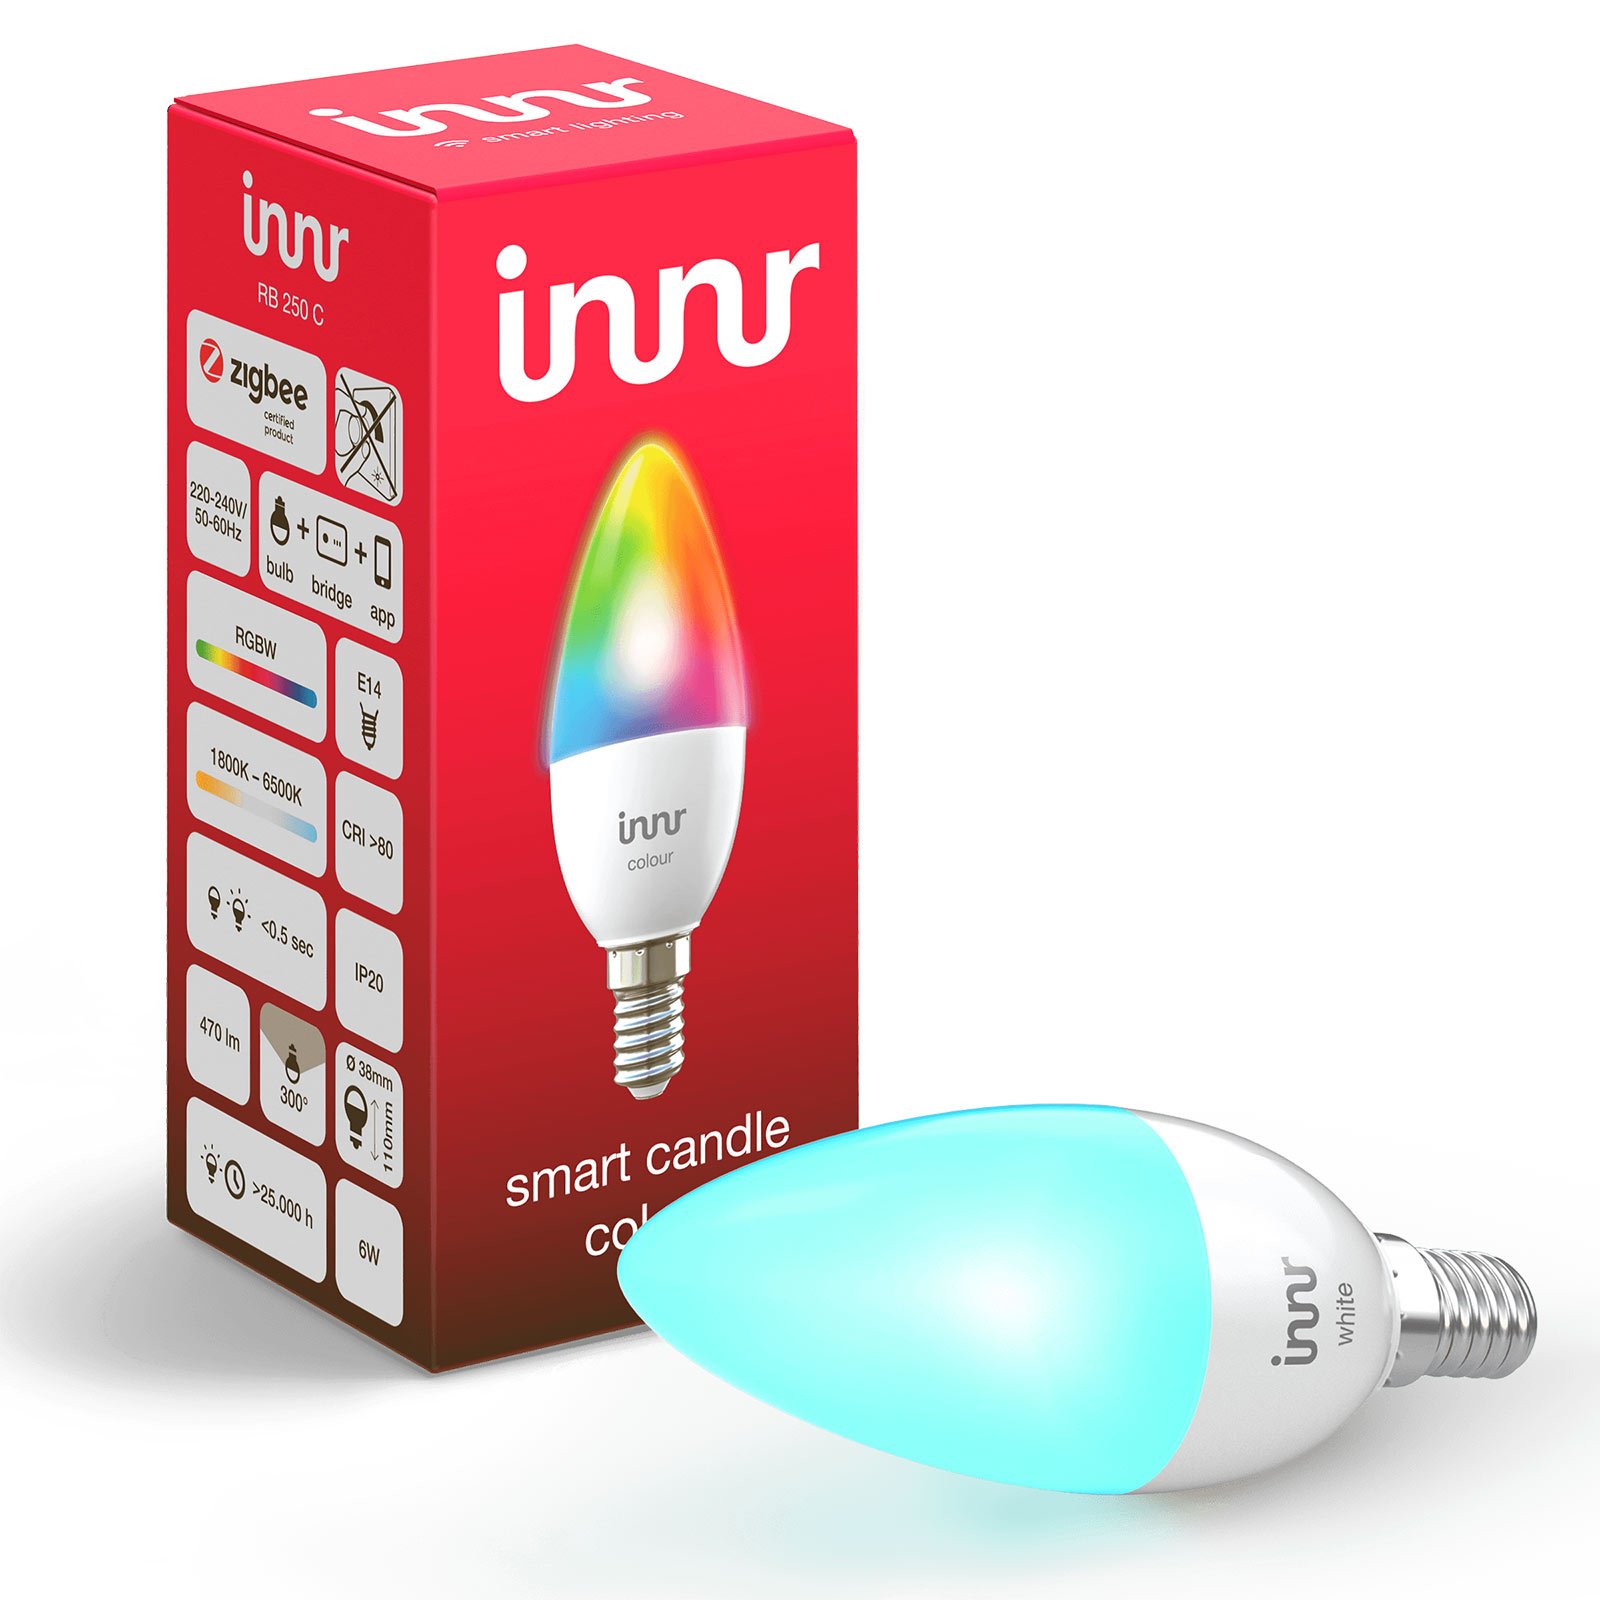 E14 6 W LED-lampa Innr Smart Candle Colour RGBW